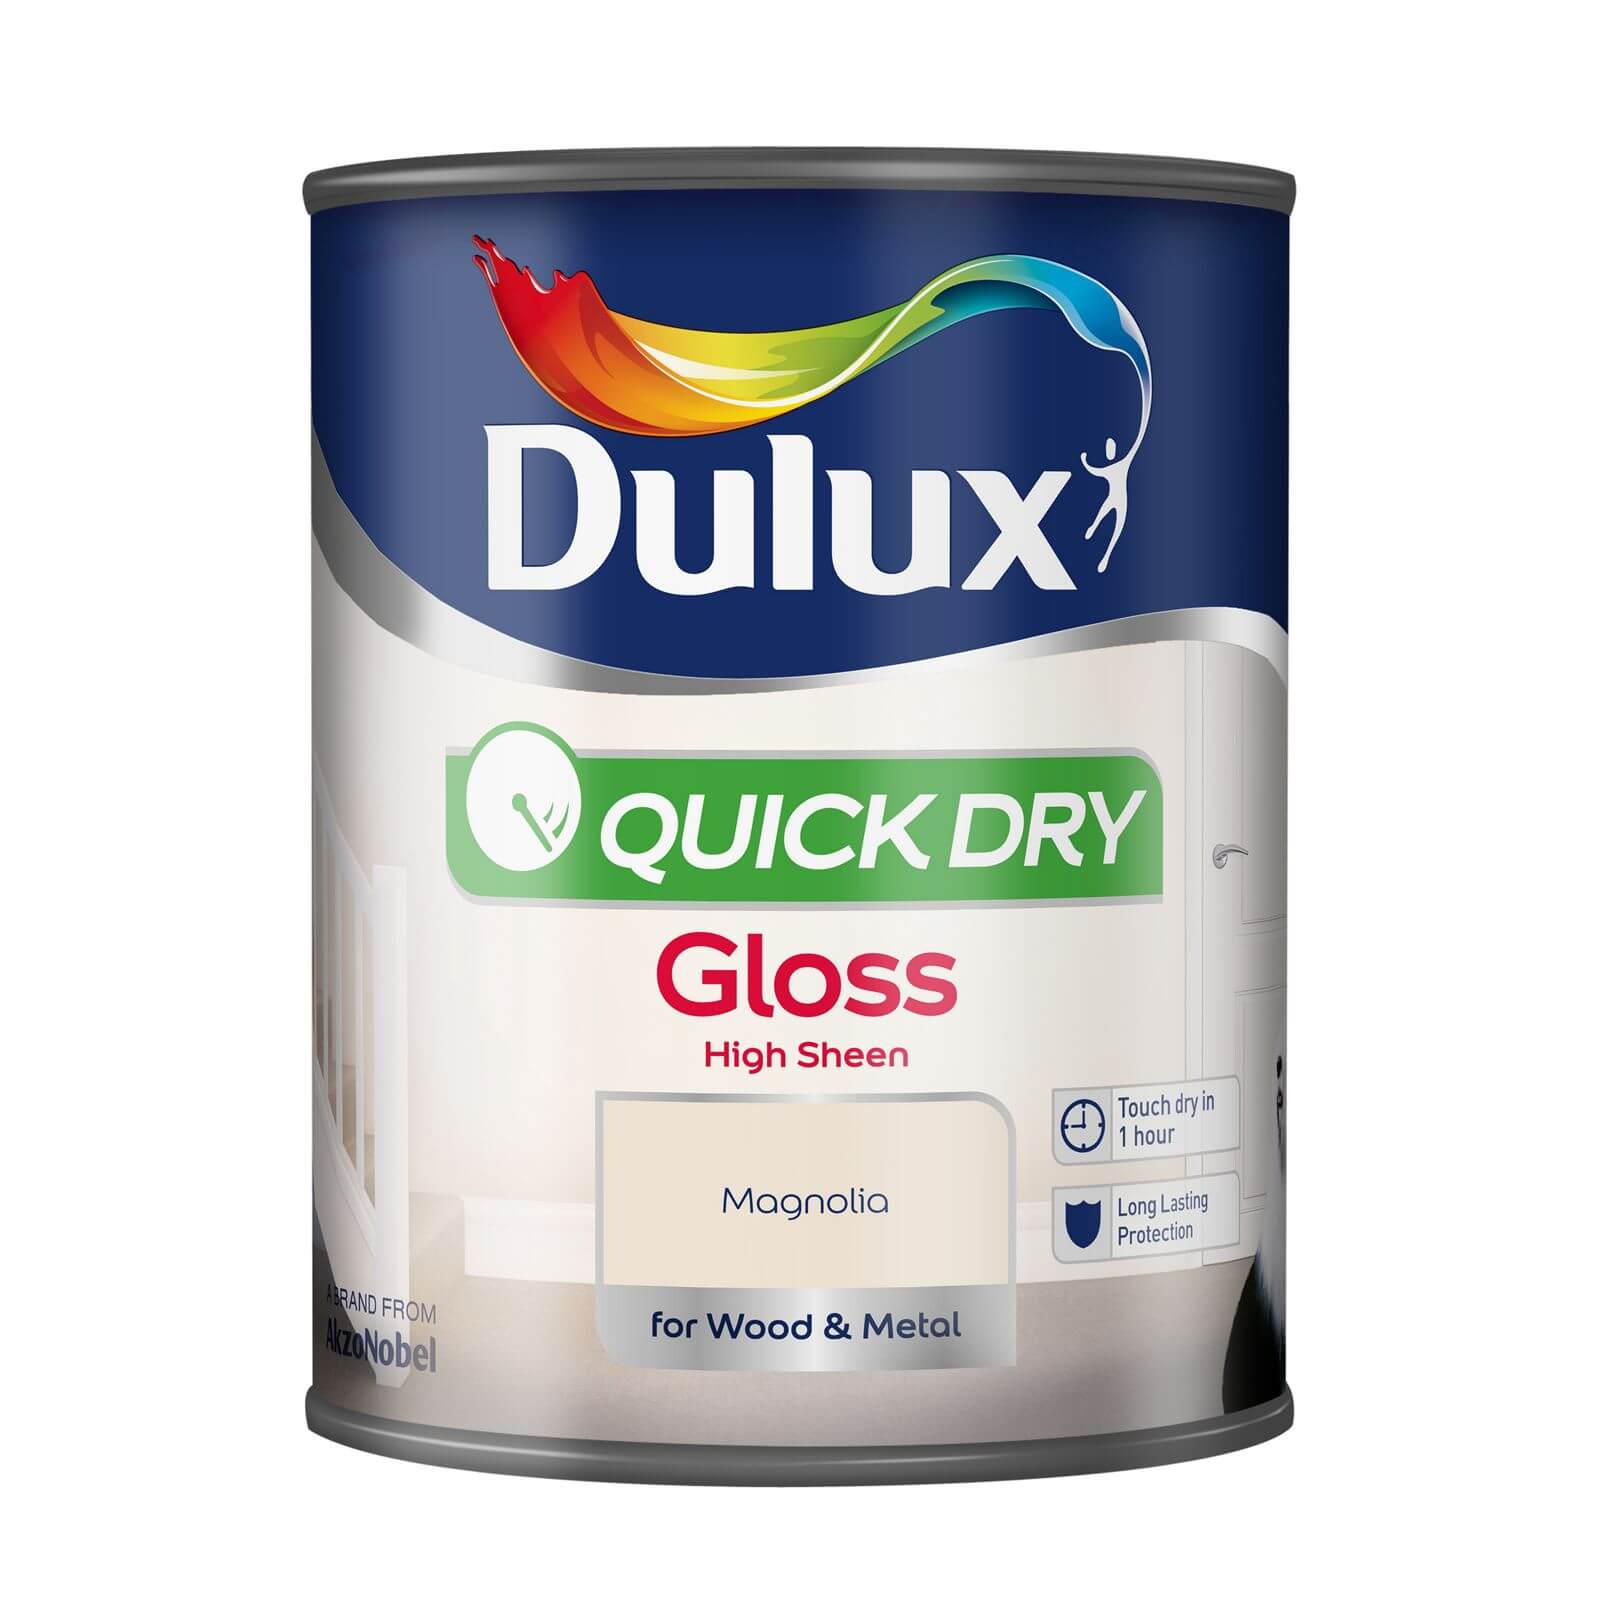 Dulux Quick Dry Gloss Paint Magnolia - 2.5L